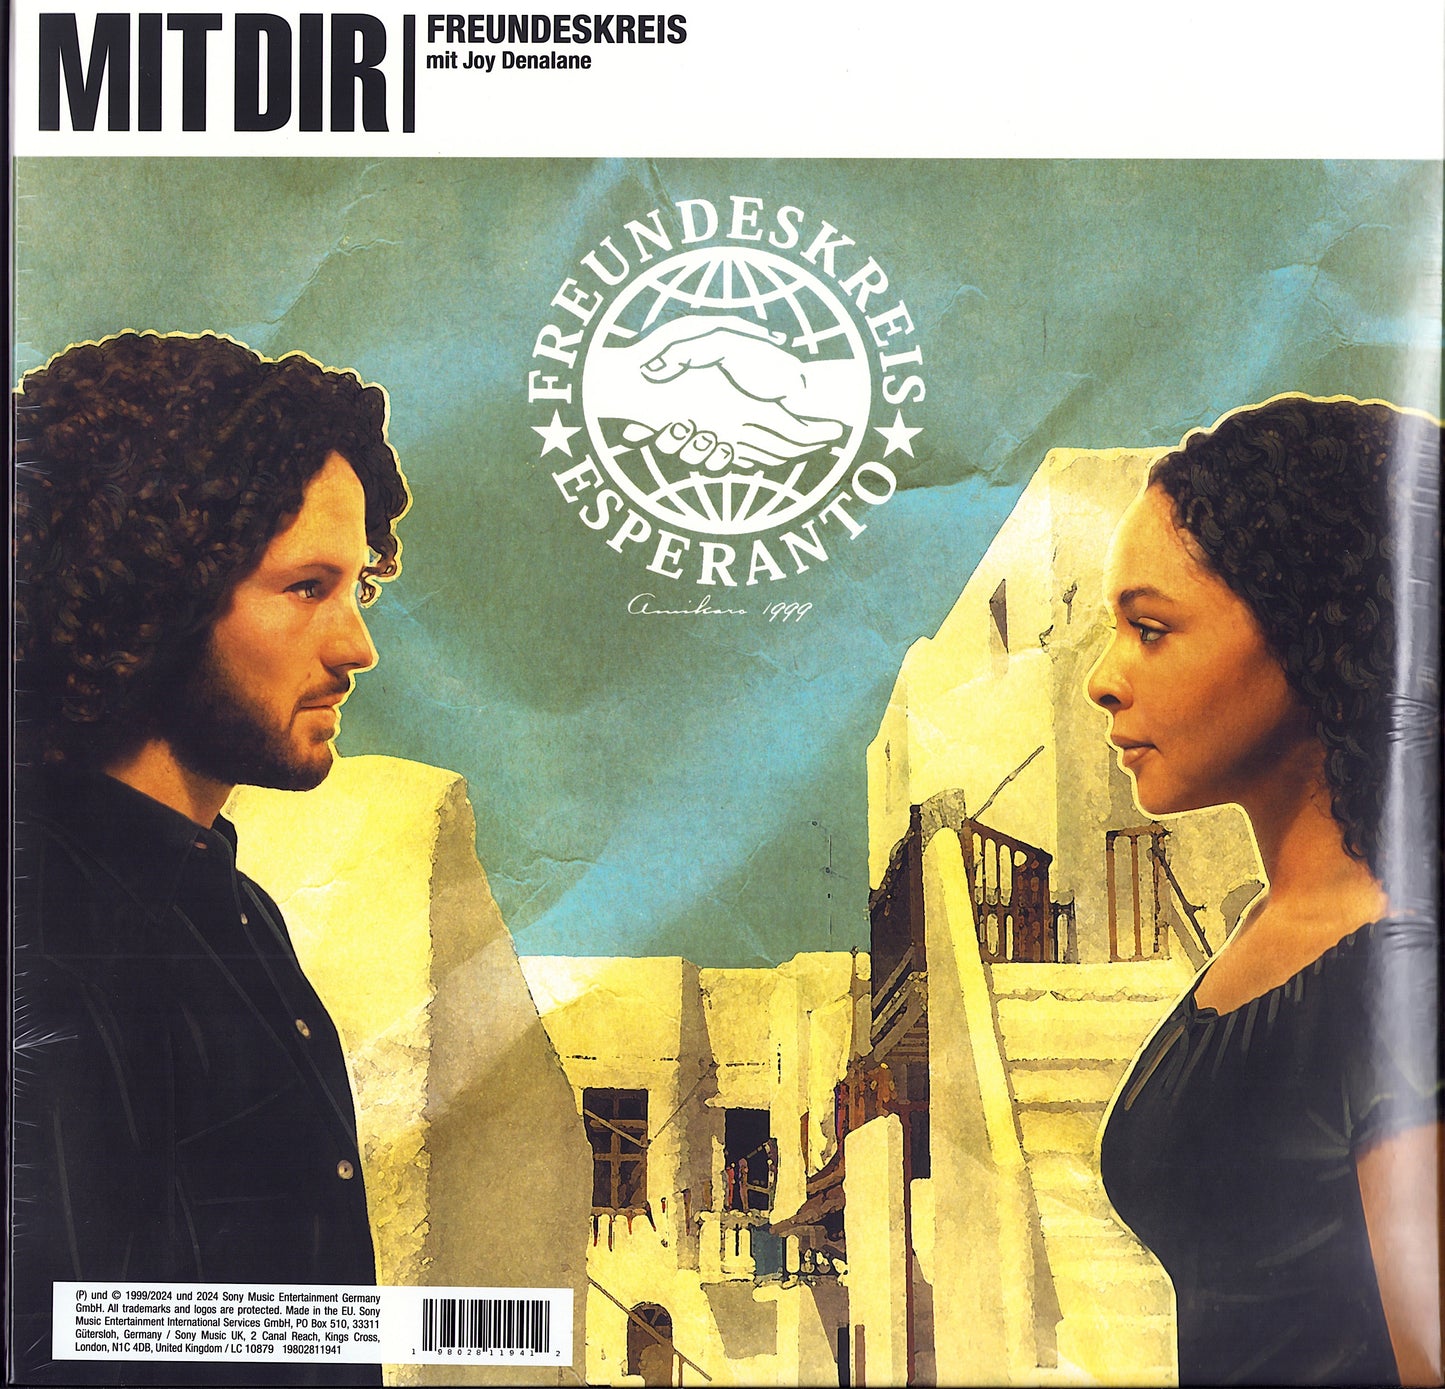 Freundeskreis - Esperanto Vinyl 2LP + Mit Dir Vinyl 12" Maxi-Single